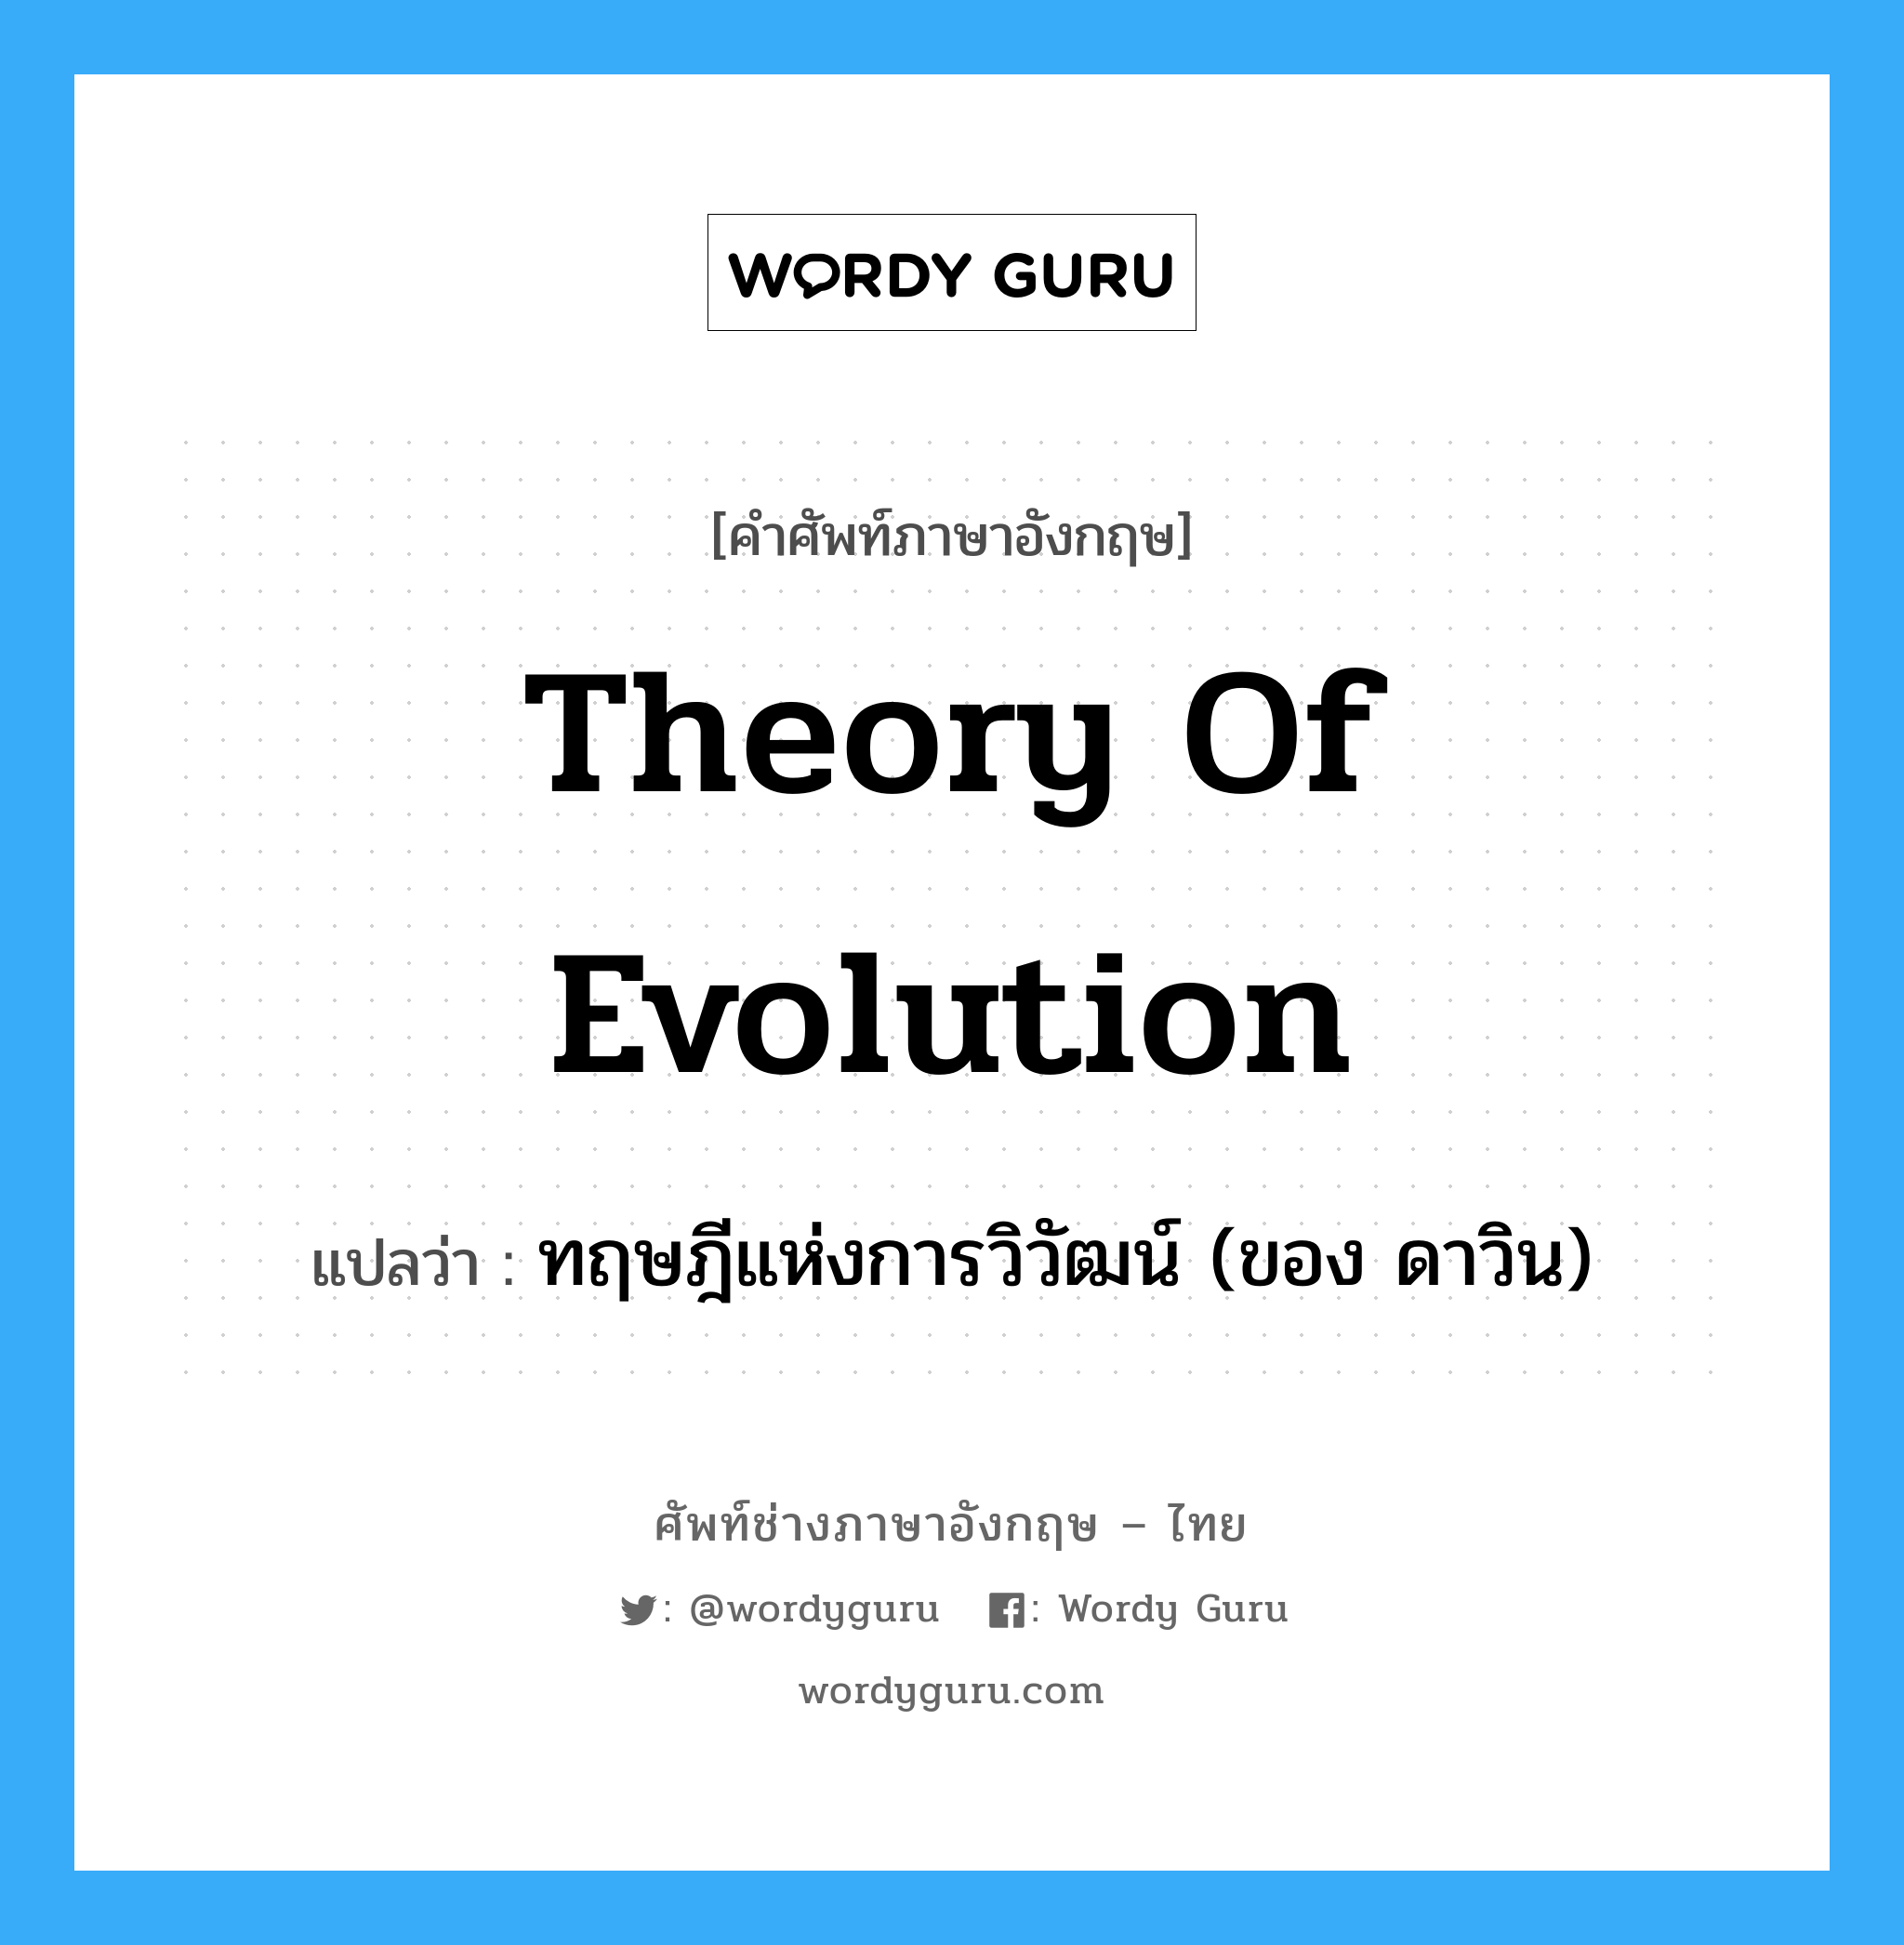 Theory of Evolution แปลว่า?, คำศัพท์ช่างภาษาอังกฤษ - ไทย Theory of Evolution คำศัพท์ภาษาอังกฤษ Theory of Evolution แปลว่า ทฤษฎีแห่งการวิวัฒน์ (ของ ดาวิน)